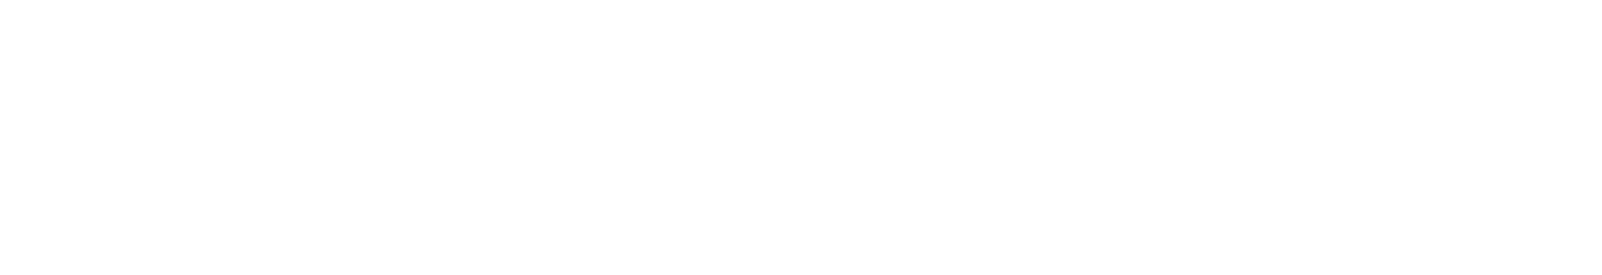 Manitex International Logo groß für dunkle Hintergründe (transparentes PNG)